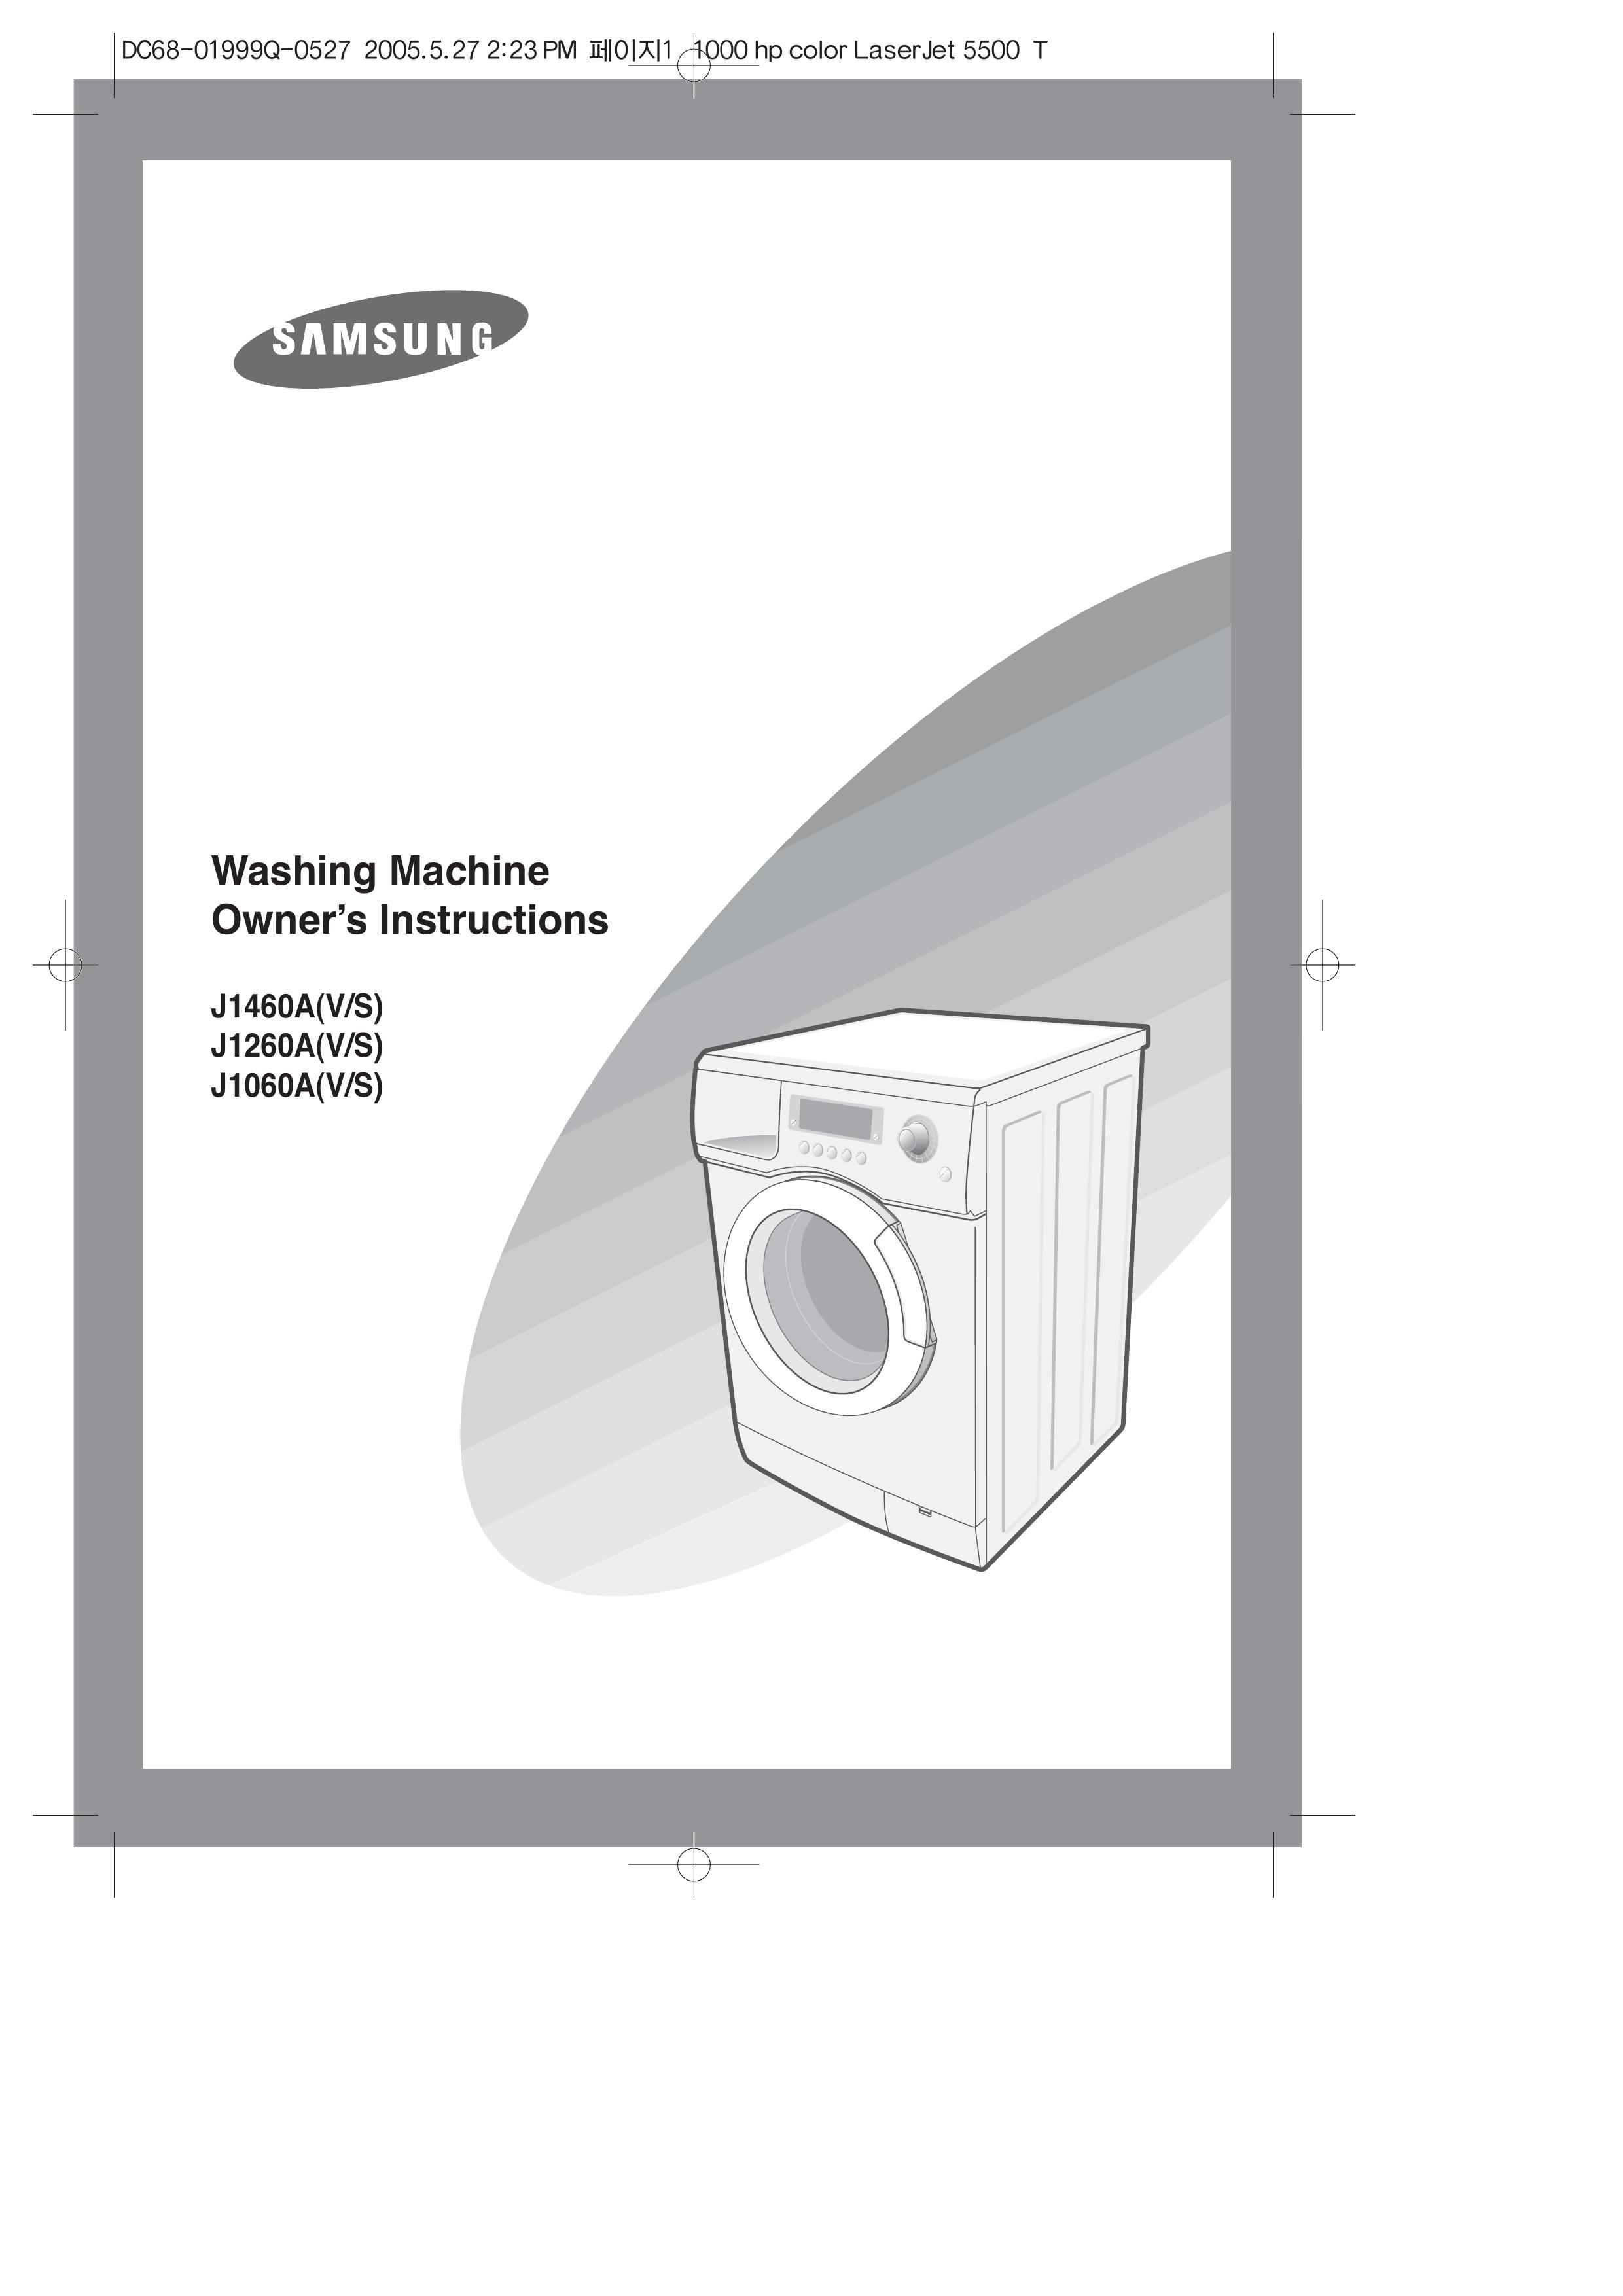 Samsung J1460A(V/S) Washer/Dryer User Manual